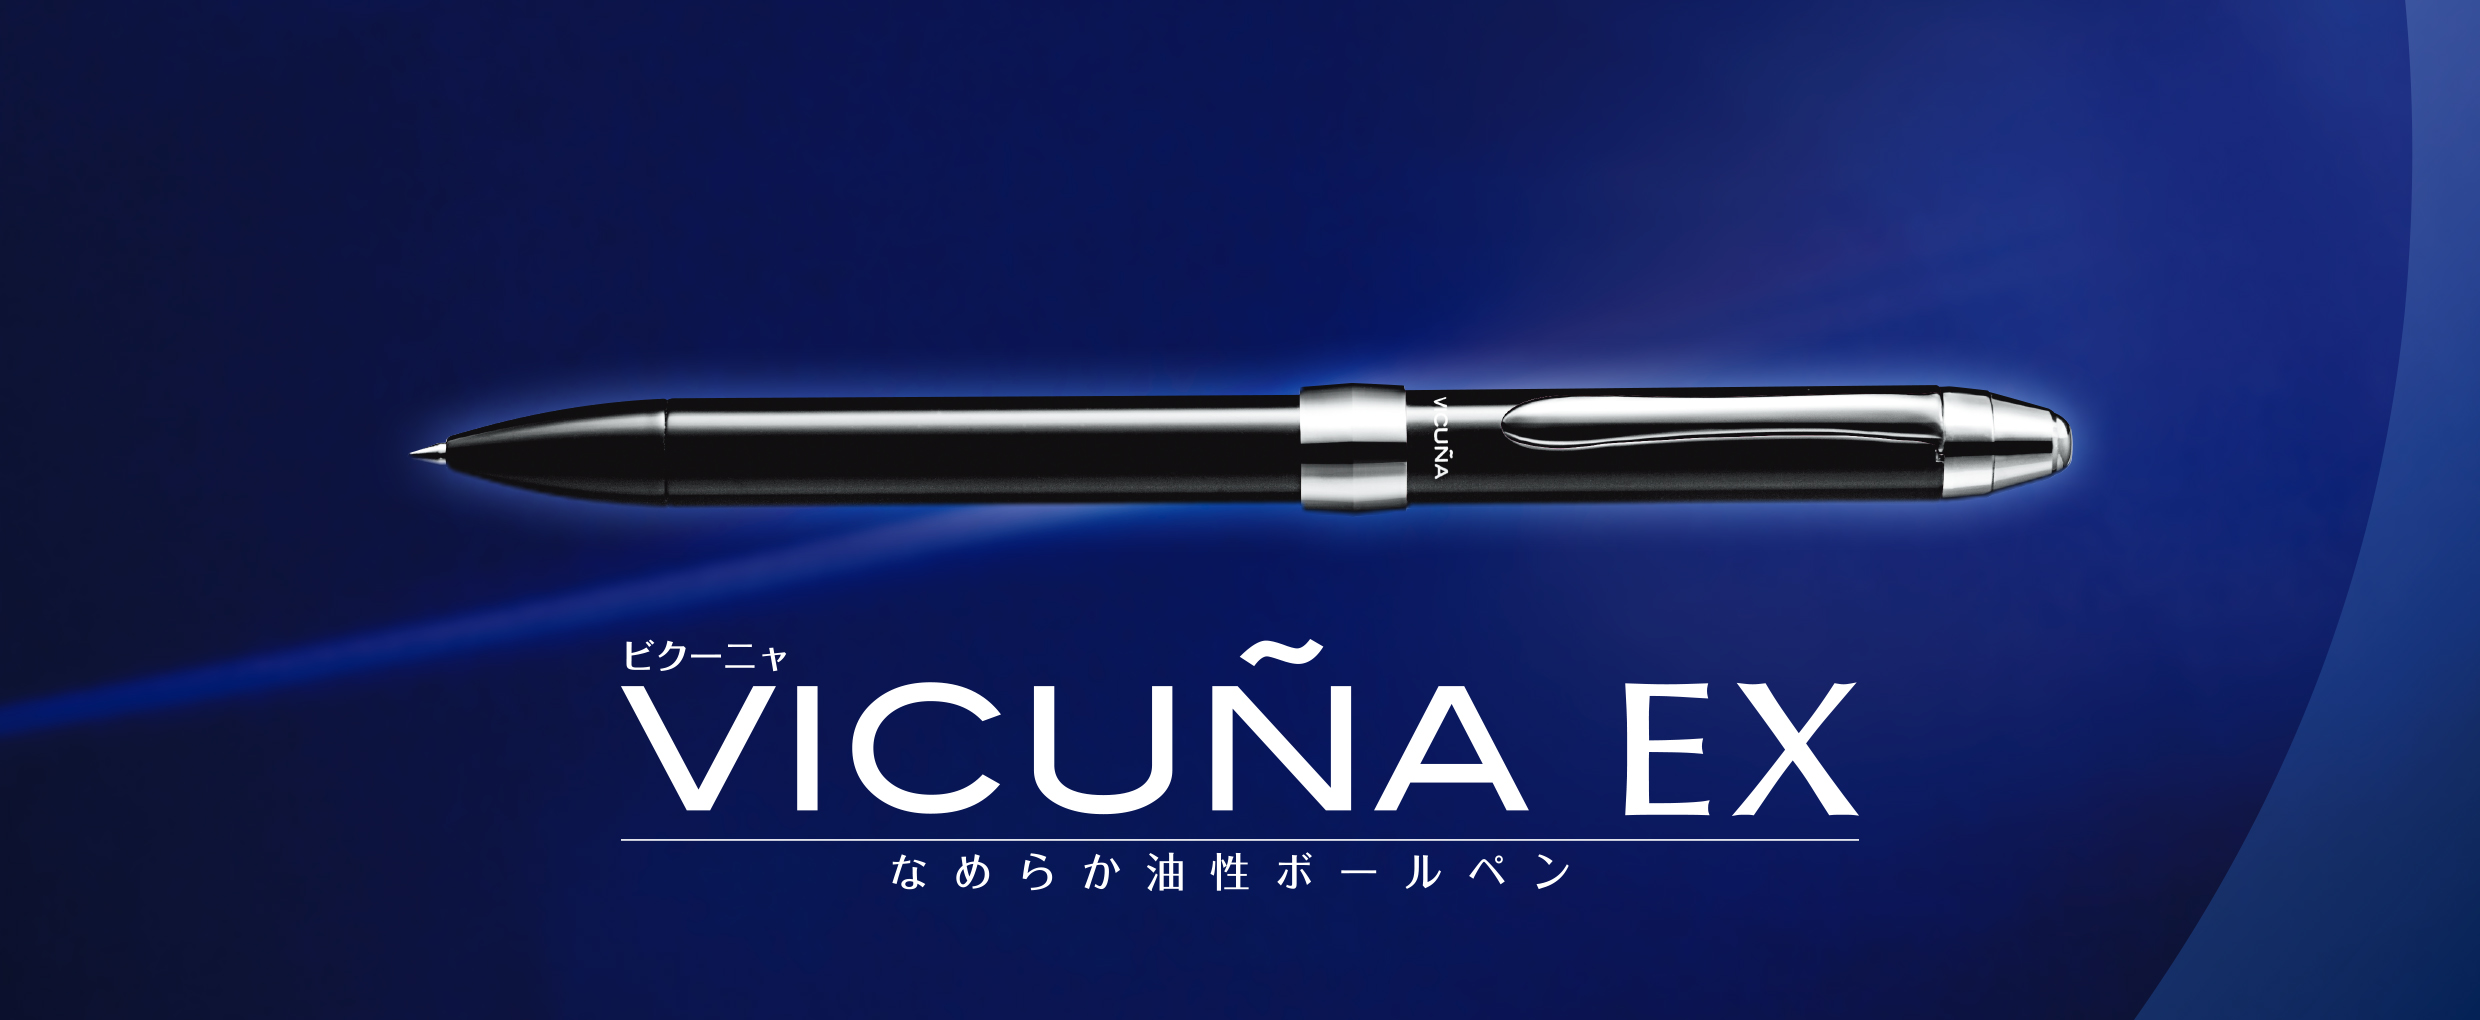 ビクーニャEX3シリーズ 多機能ペン